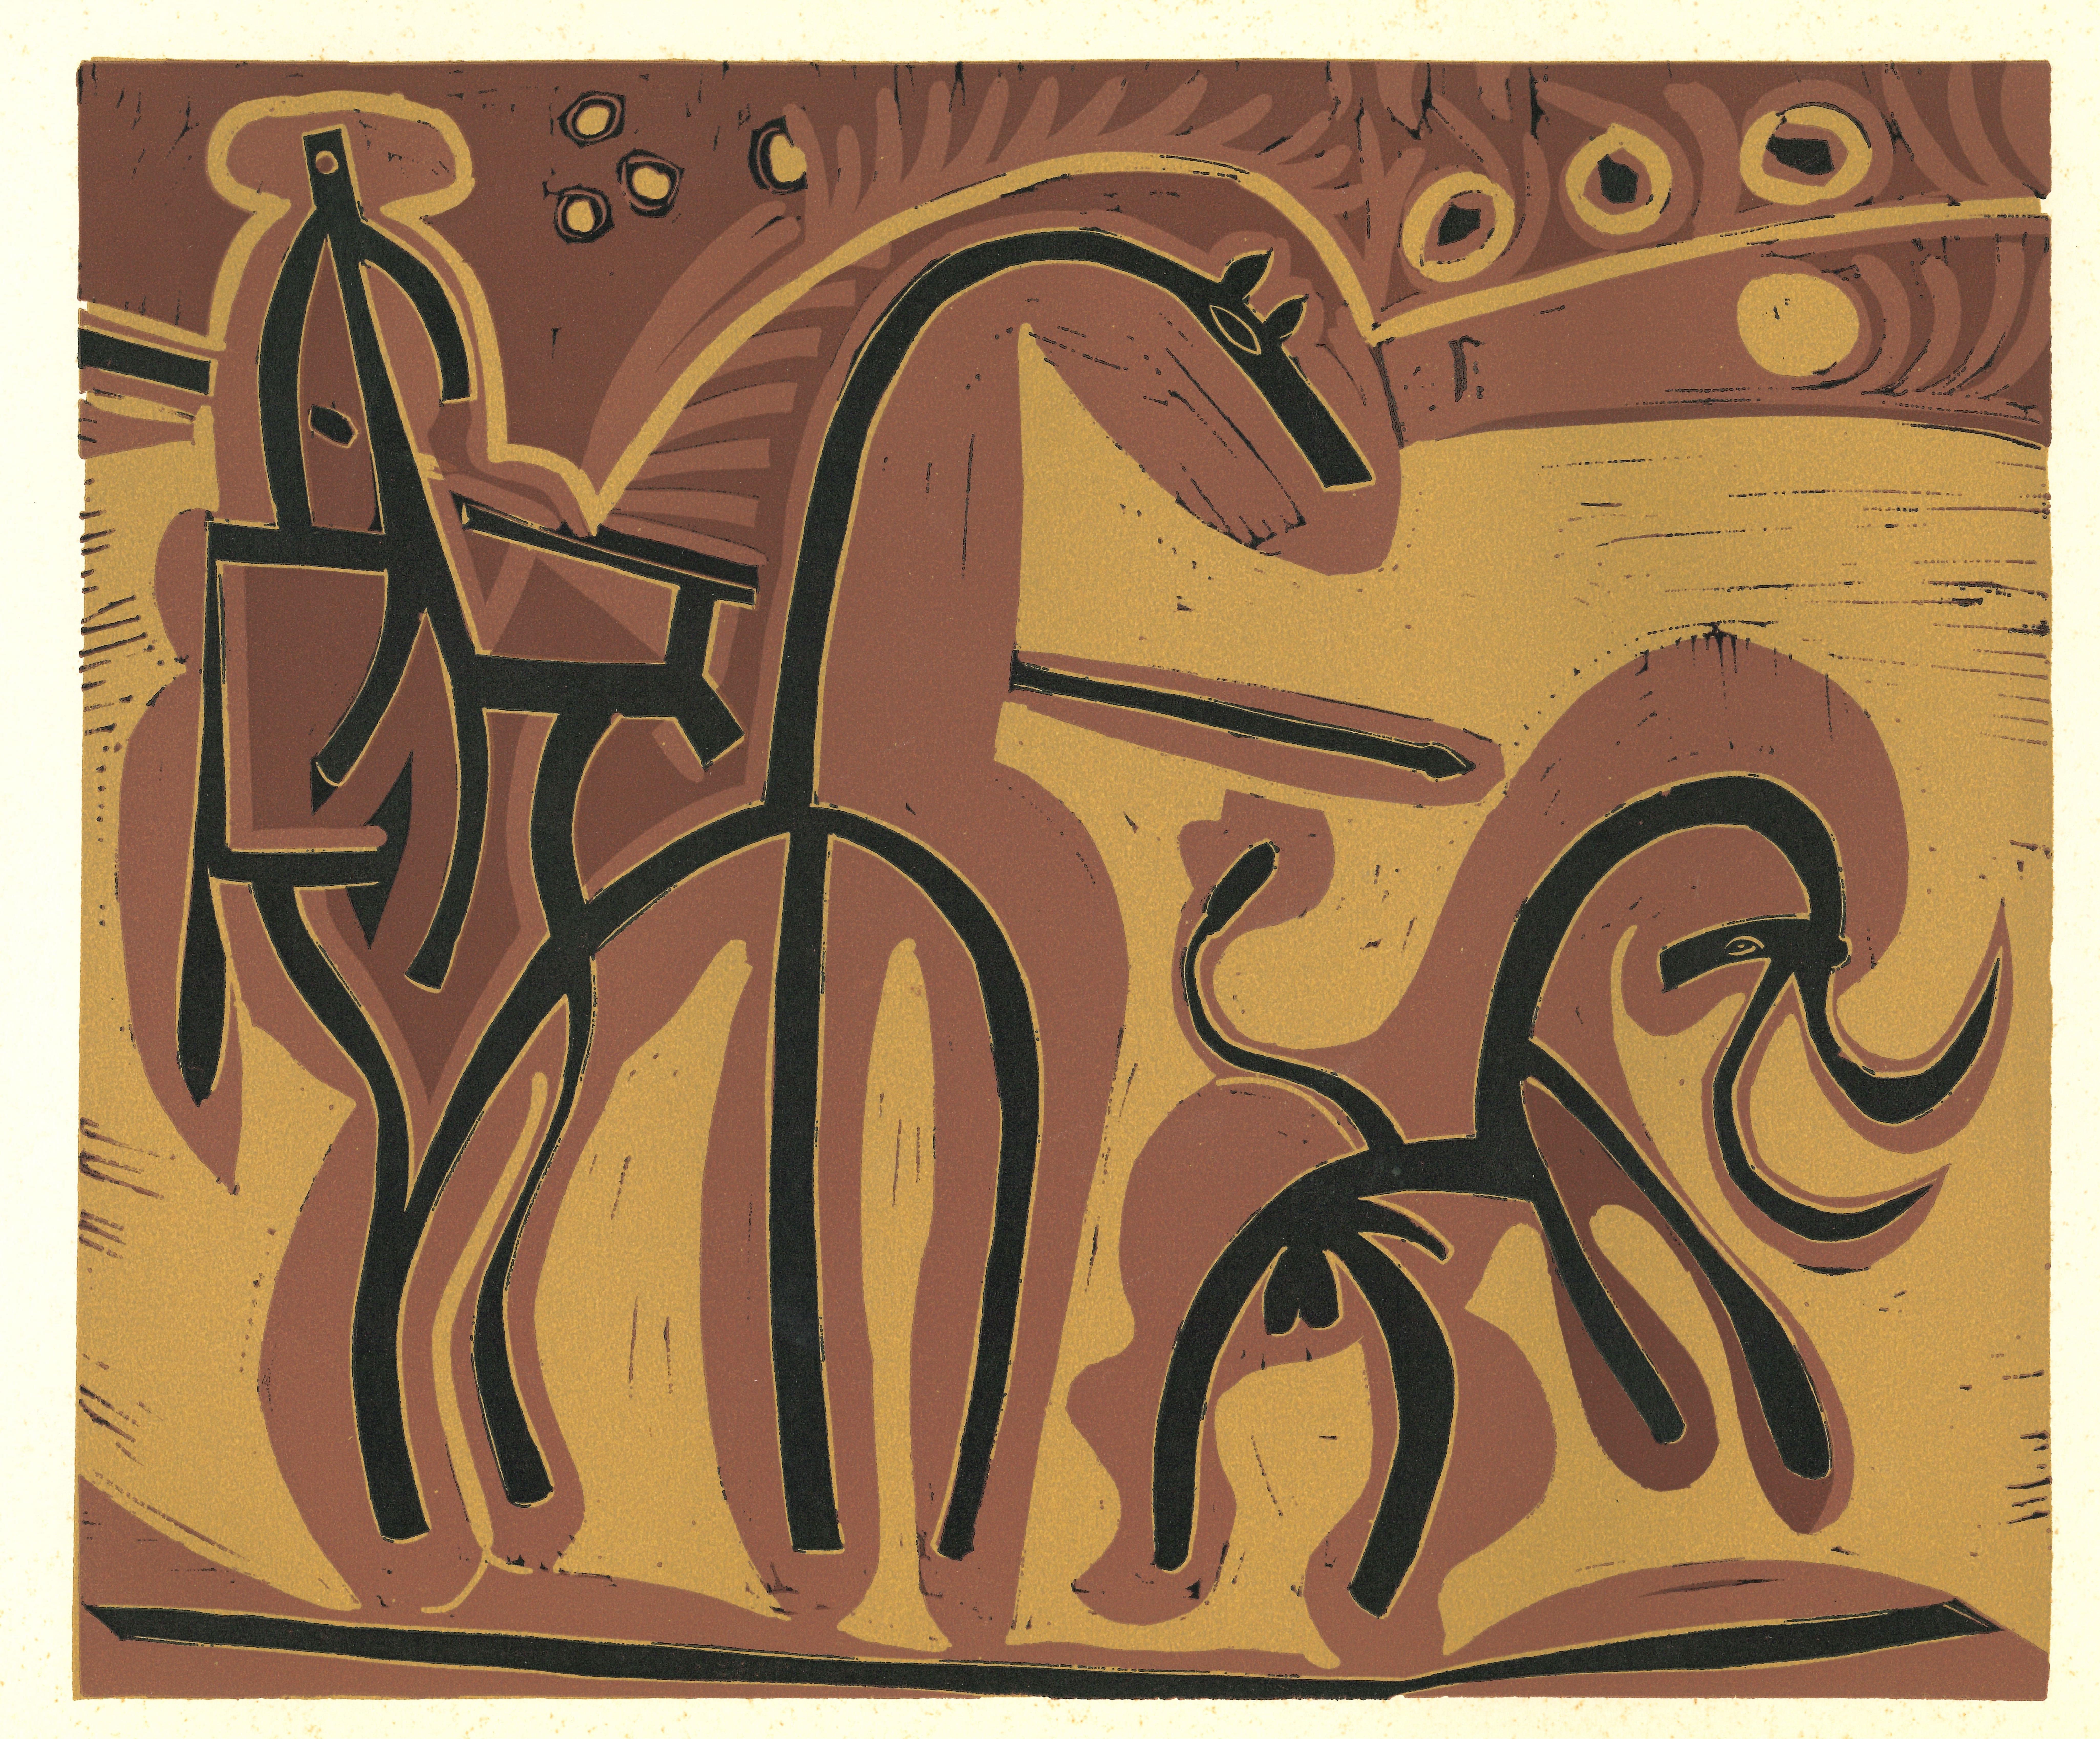 Picador et Taureau   - Linocut Reproduction After Pablo Picasso - 1962